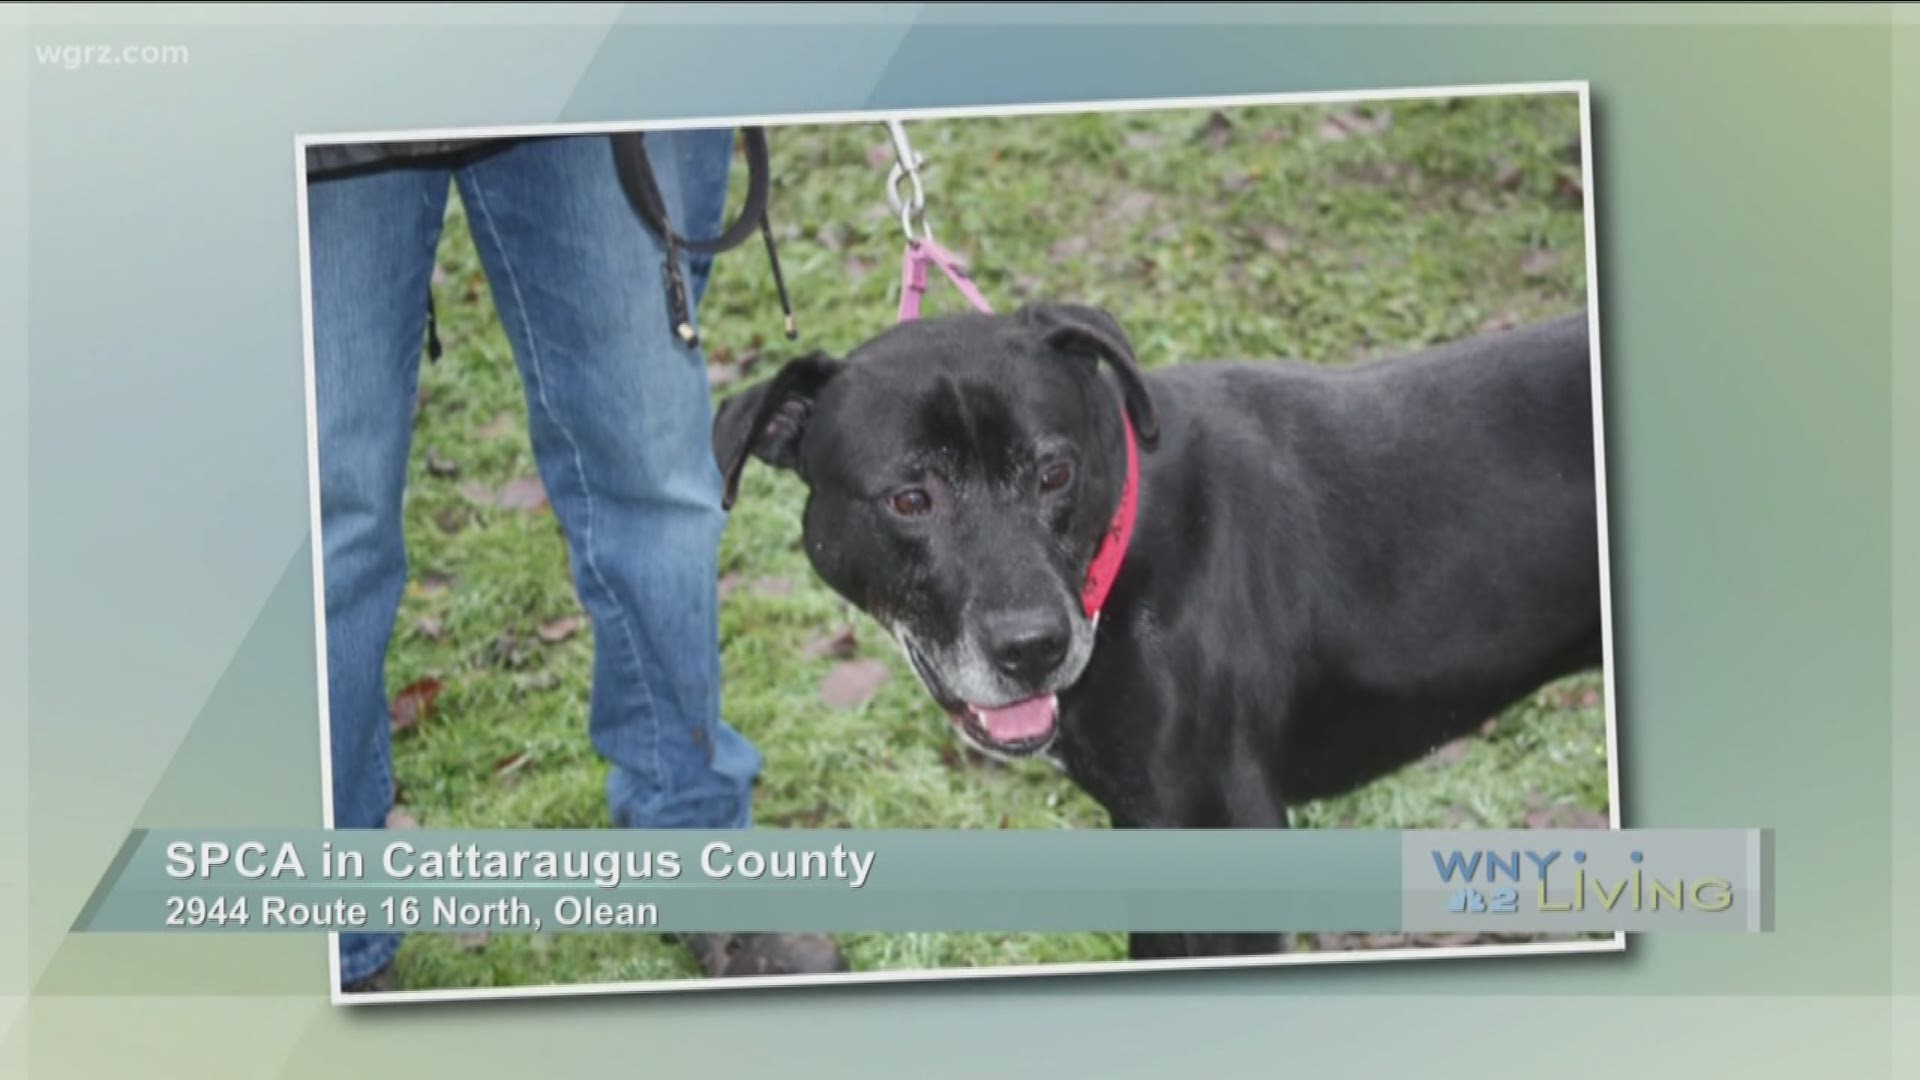 WNY Living - January 14 - SPCA in Cattaraugus County